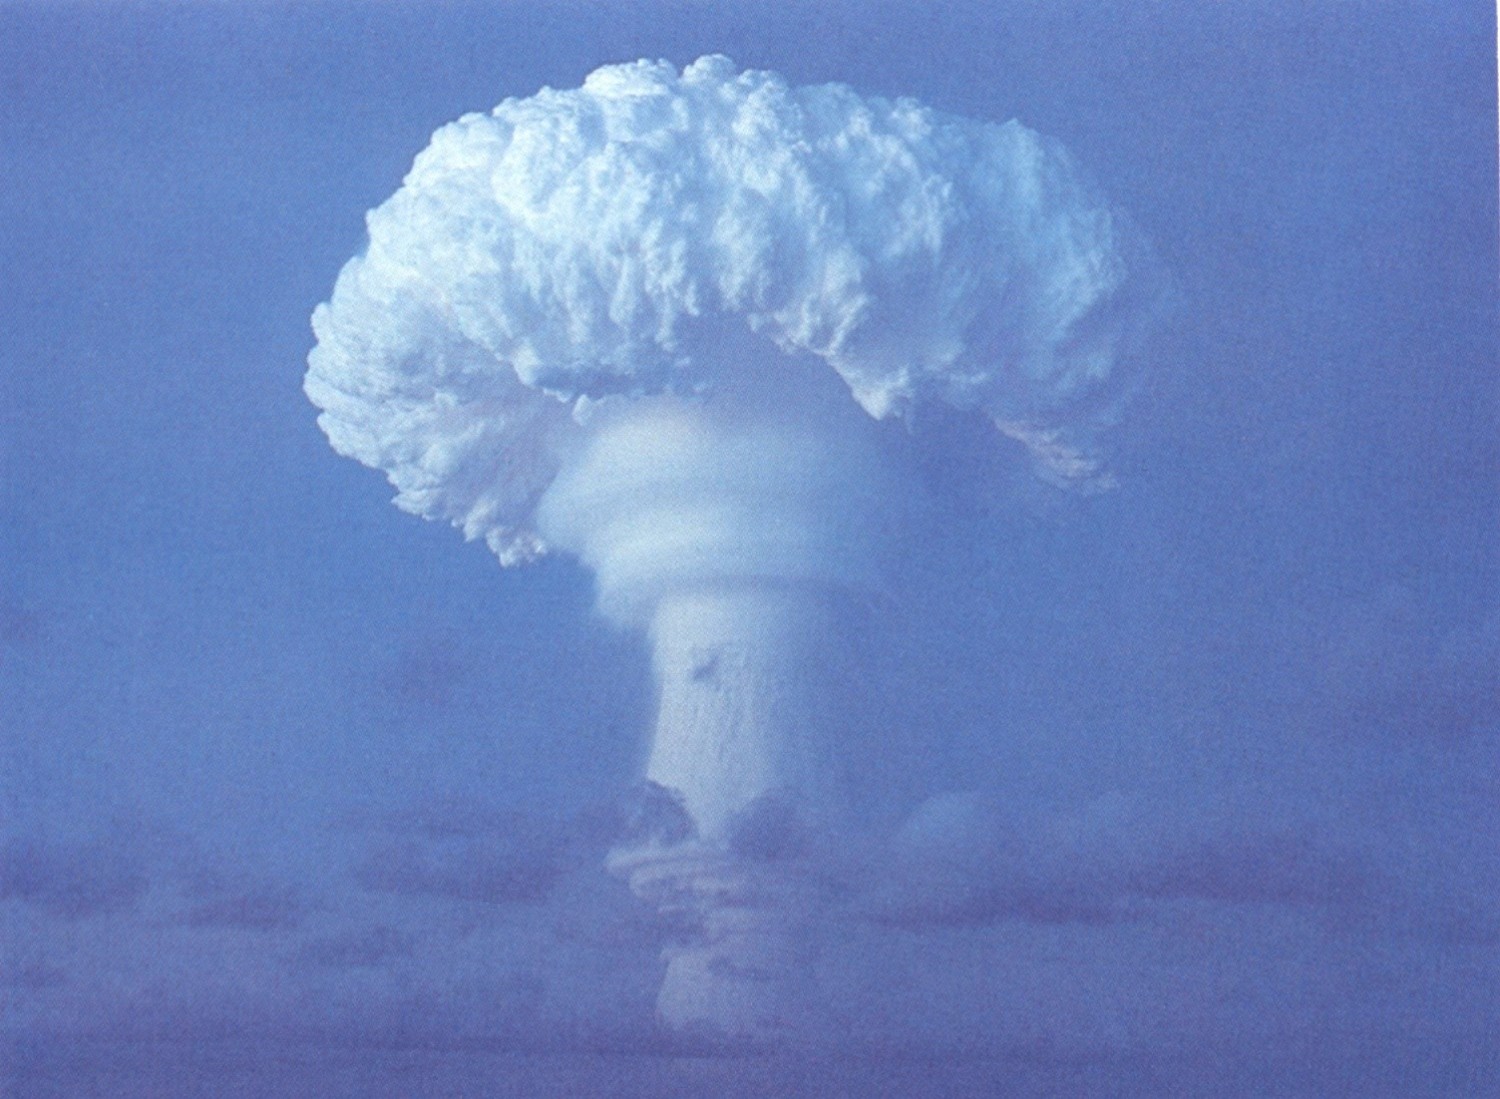 Ядерная пятерка. Вобороданя брмбпа вхрыв. Ядерный взрыв 25килотонн. Ядерный гриб царь бомбы. Царь бомба взрыв.